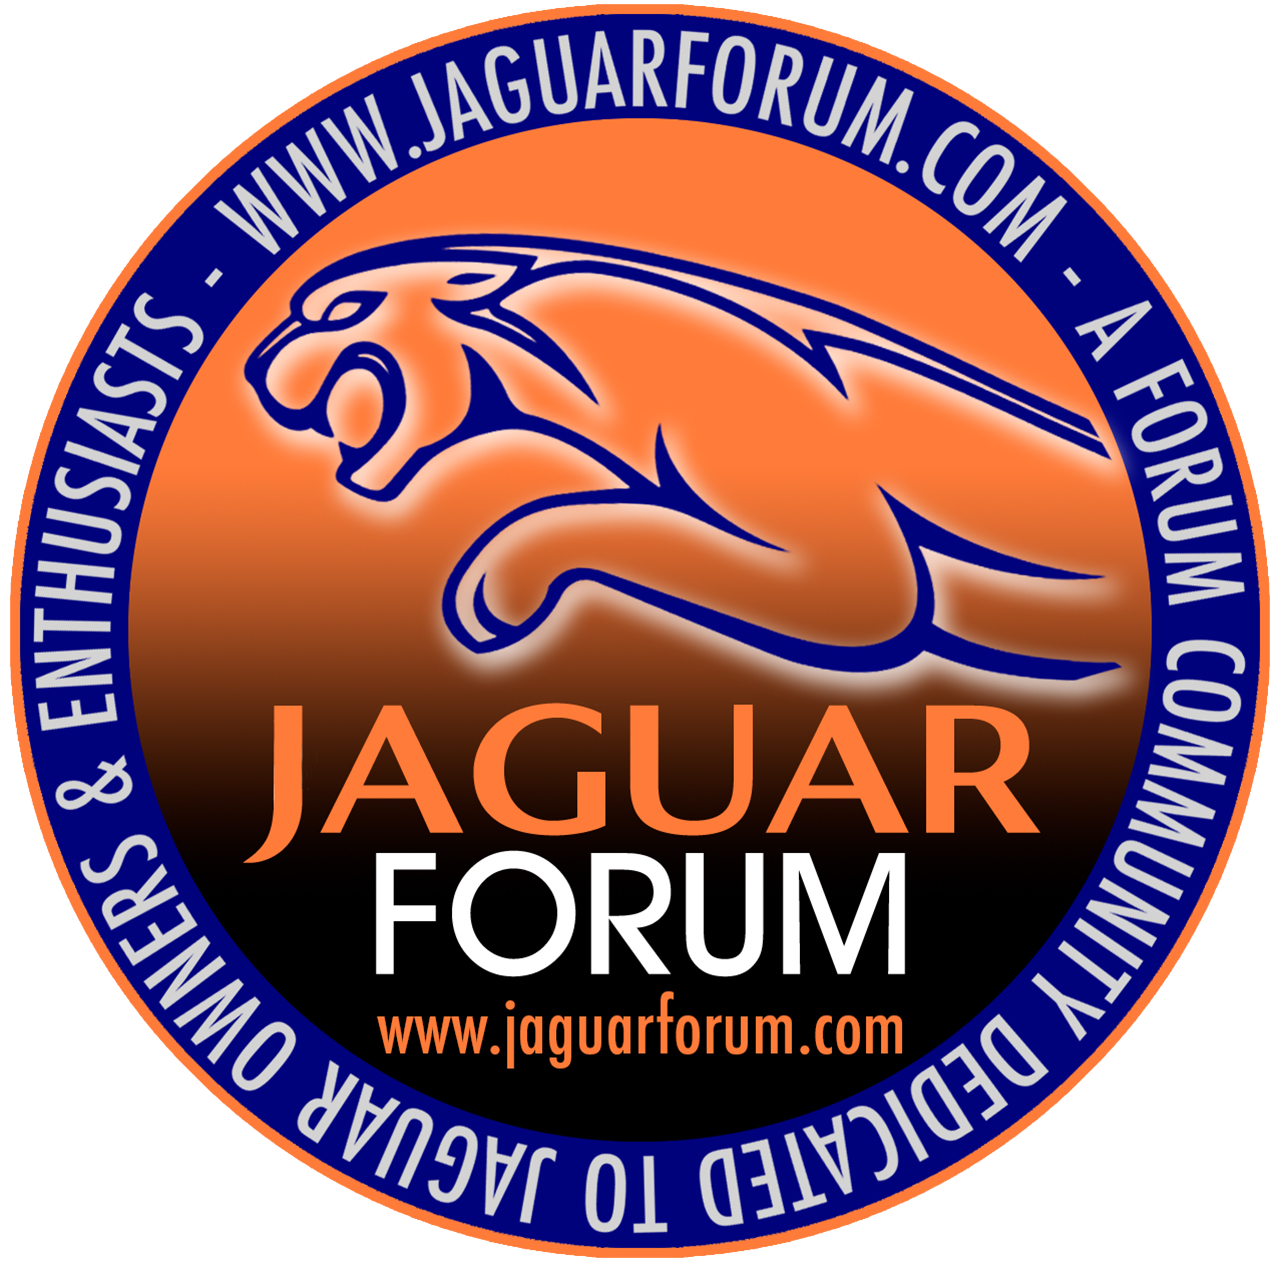 JaguarForum.com